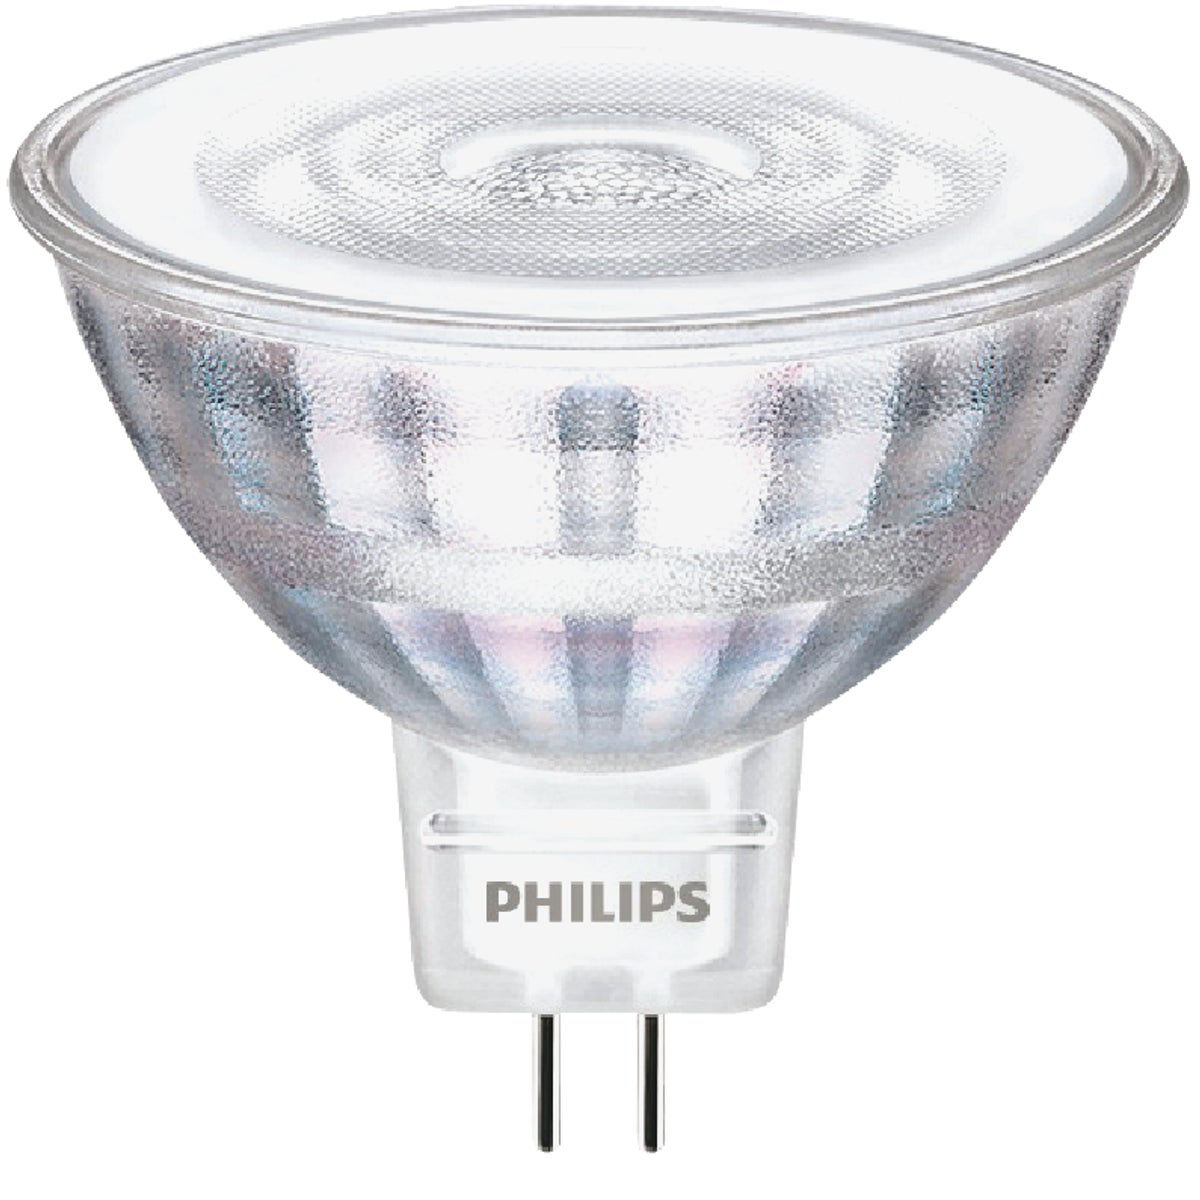 Philips Classic Glass 50W Equivalent Bright White MR16 GU5.3 LED